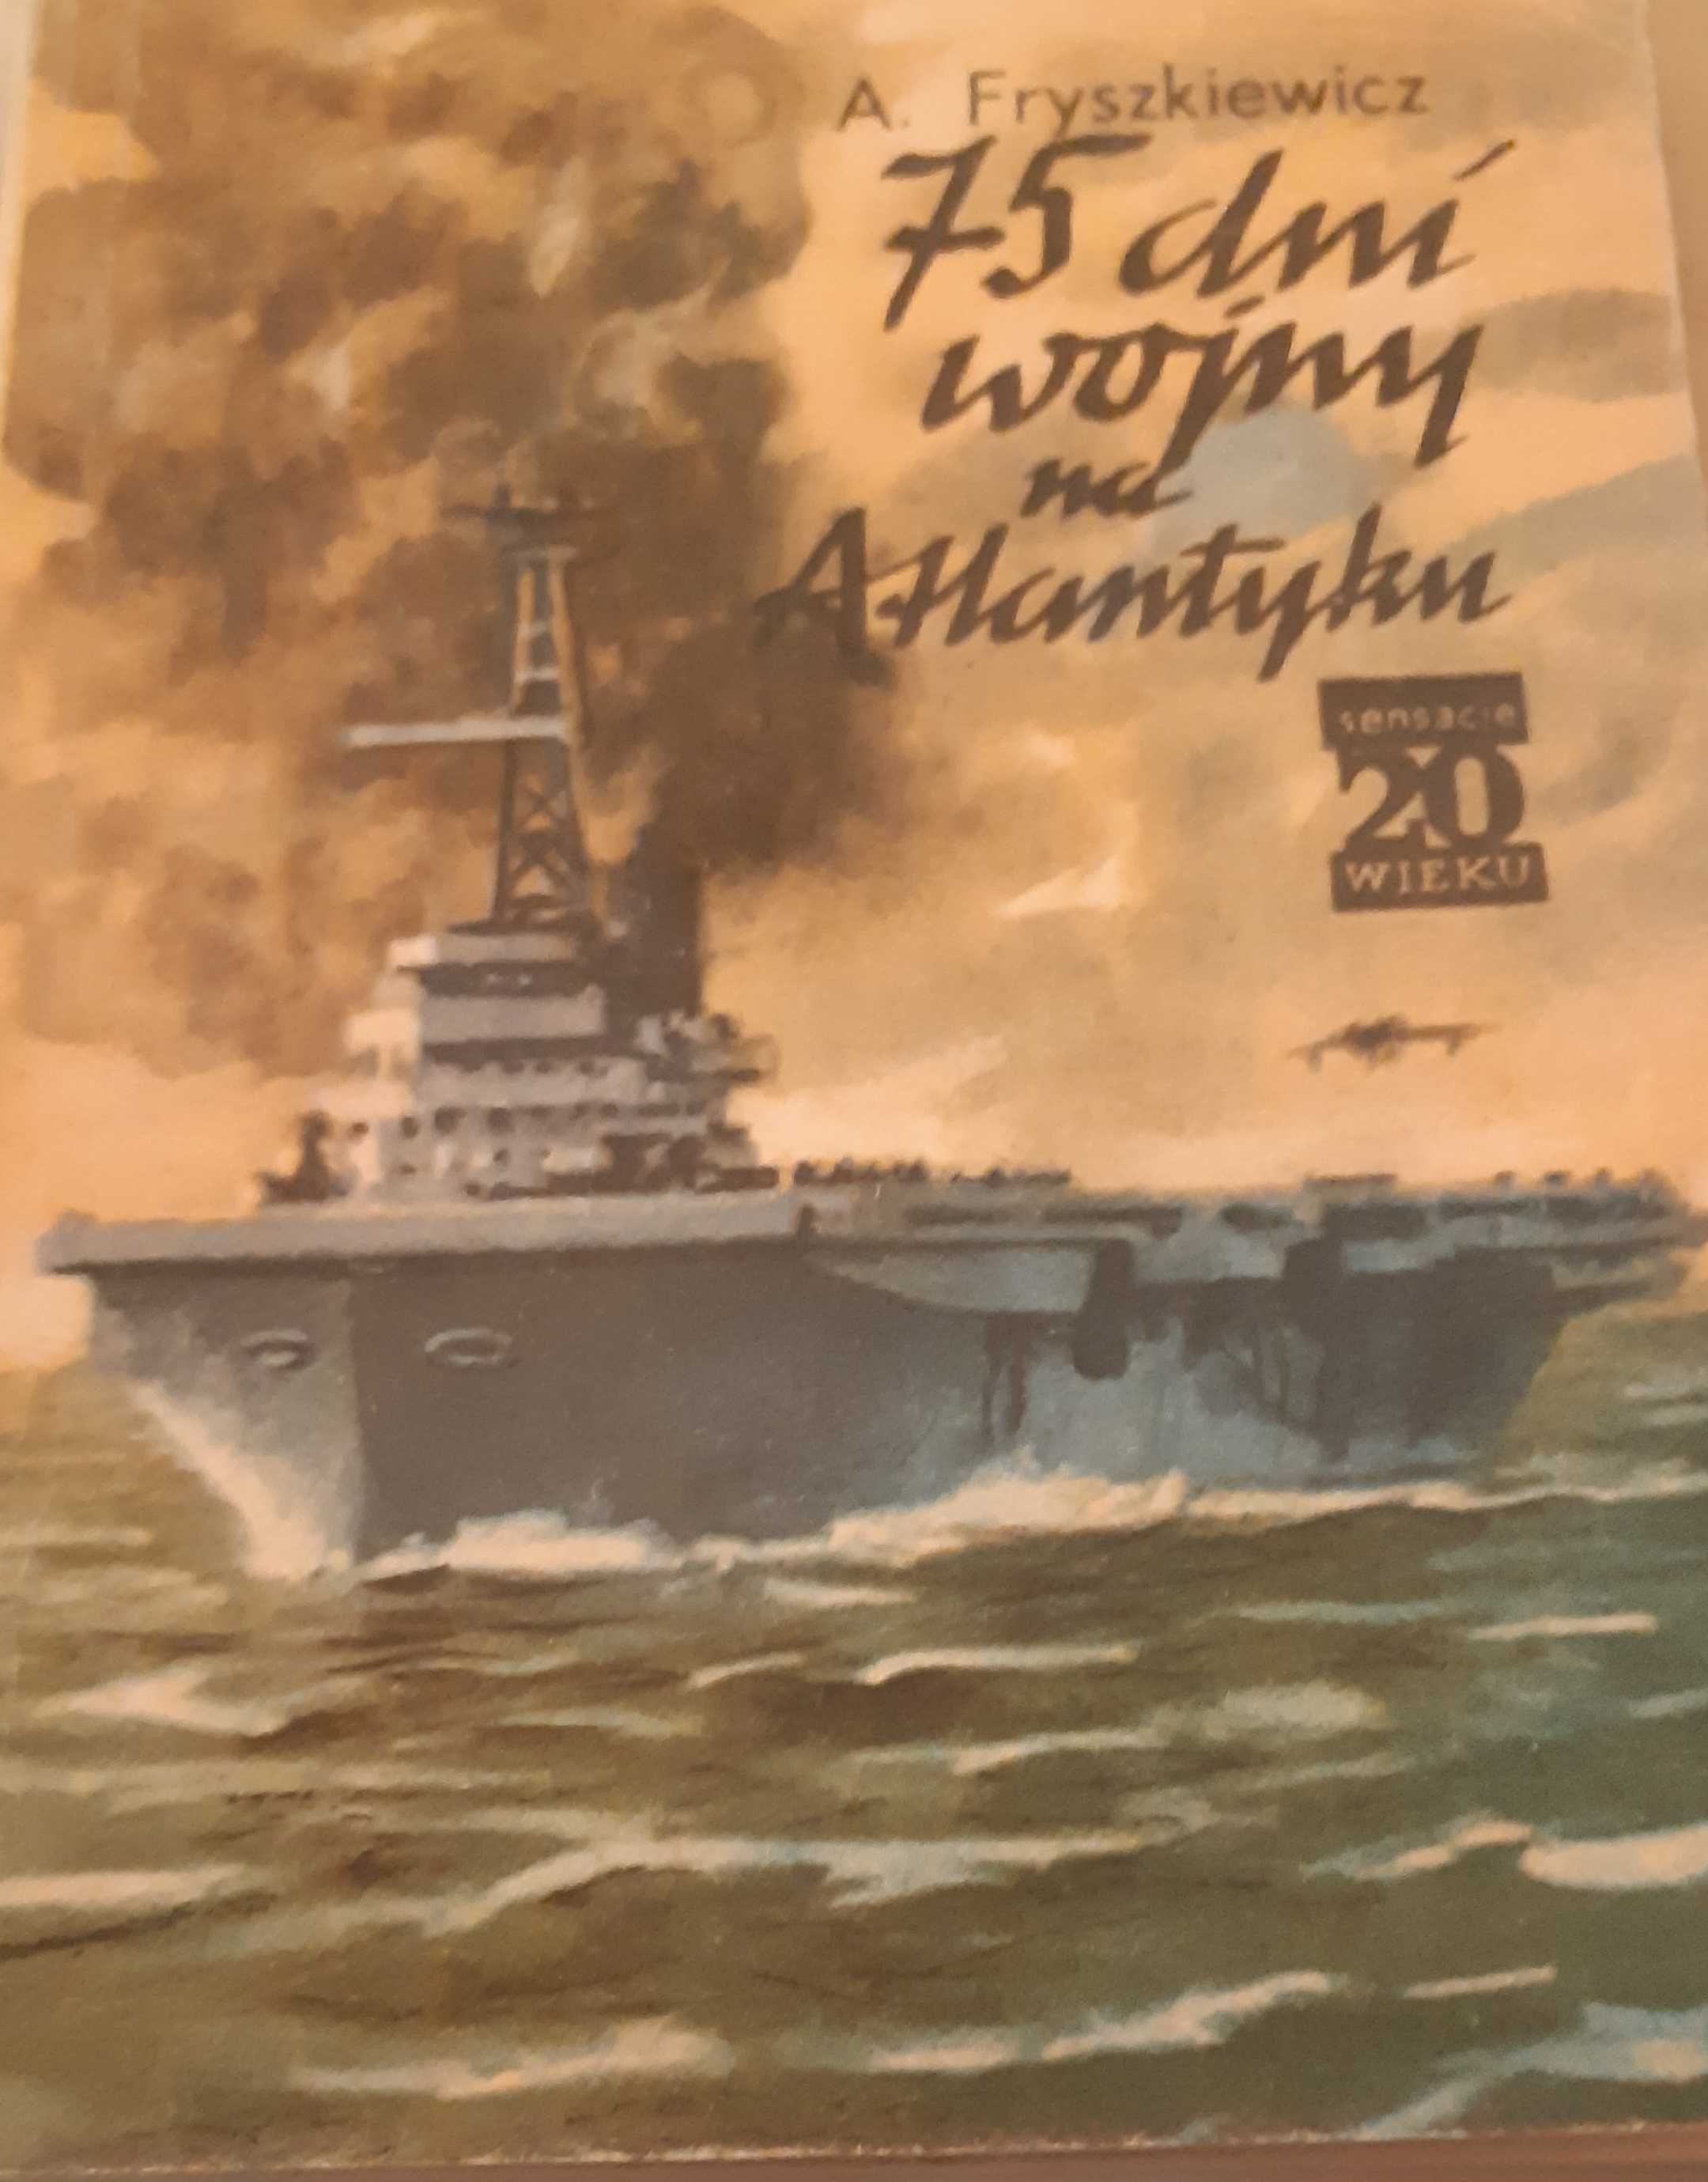 75 dni wojny na Atlantyku